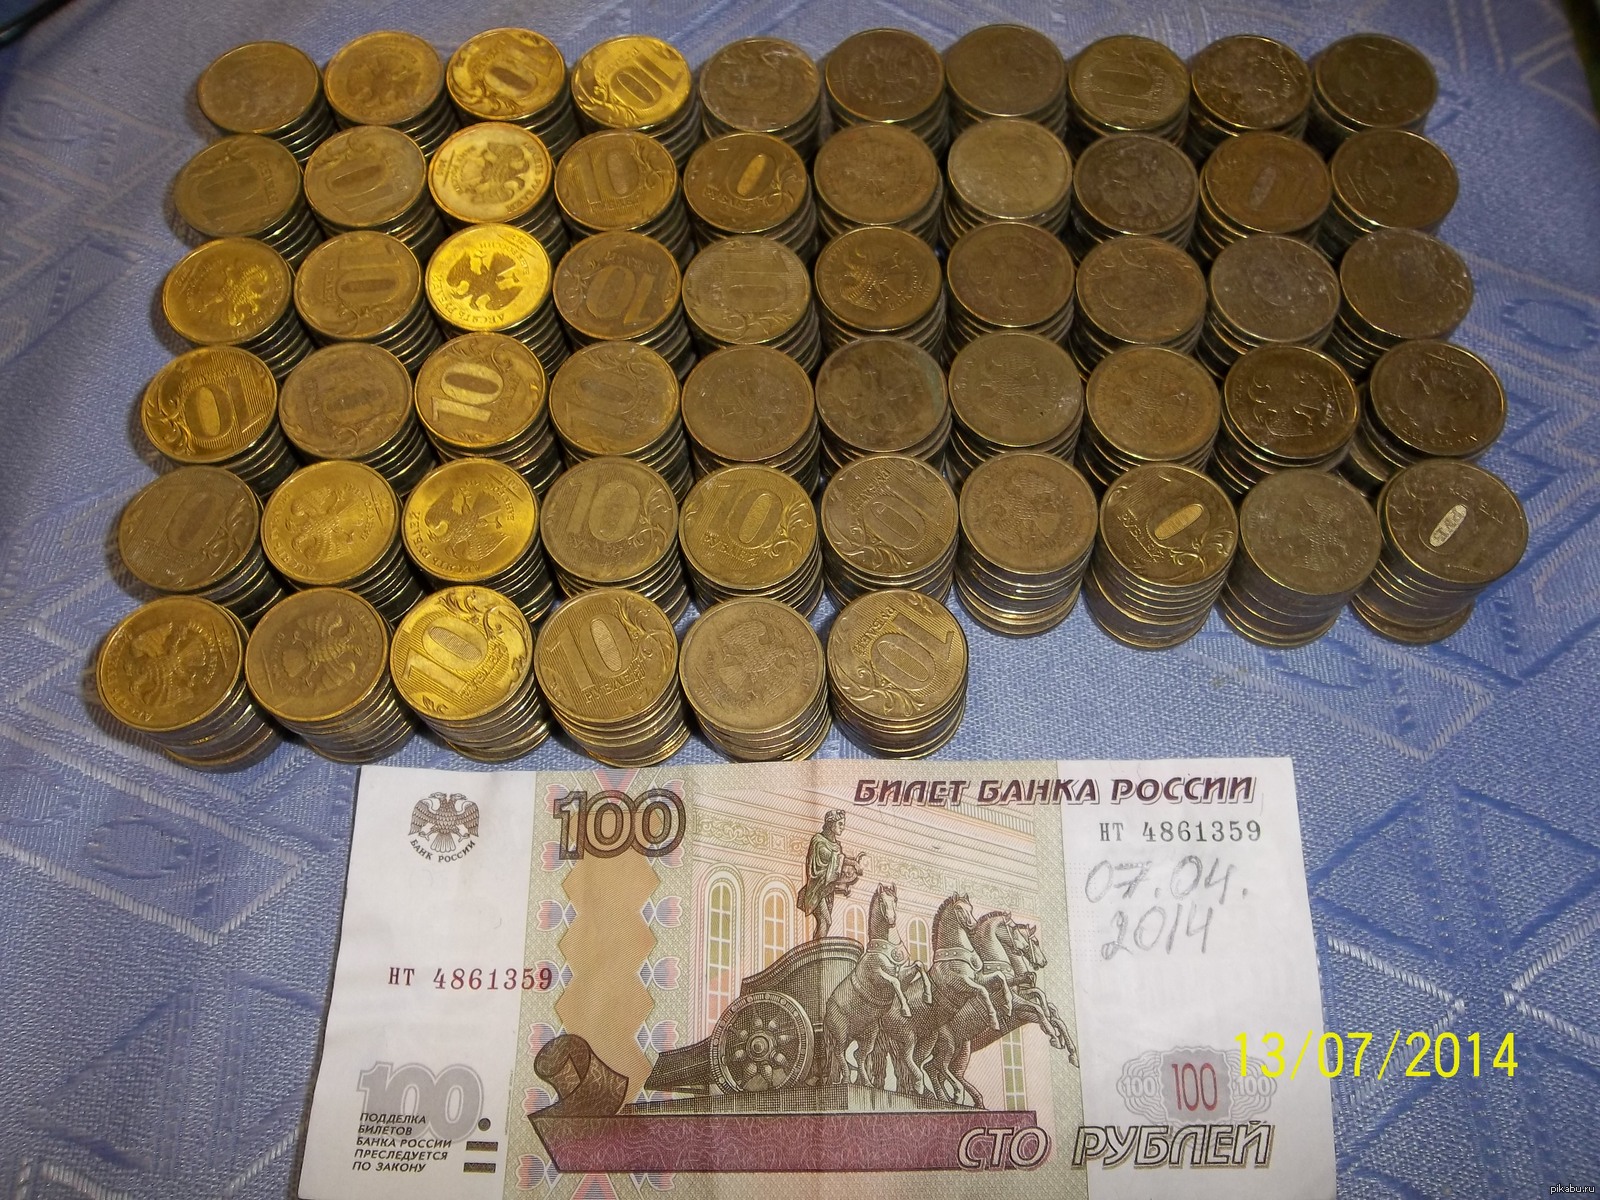 1000 10 Рублевых монет